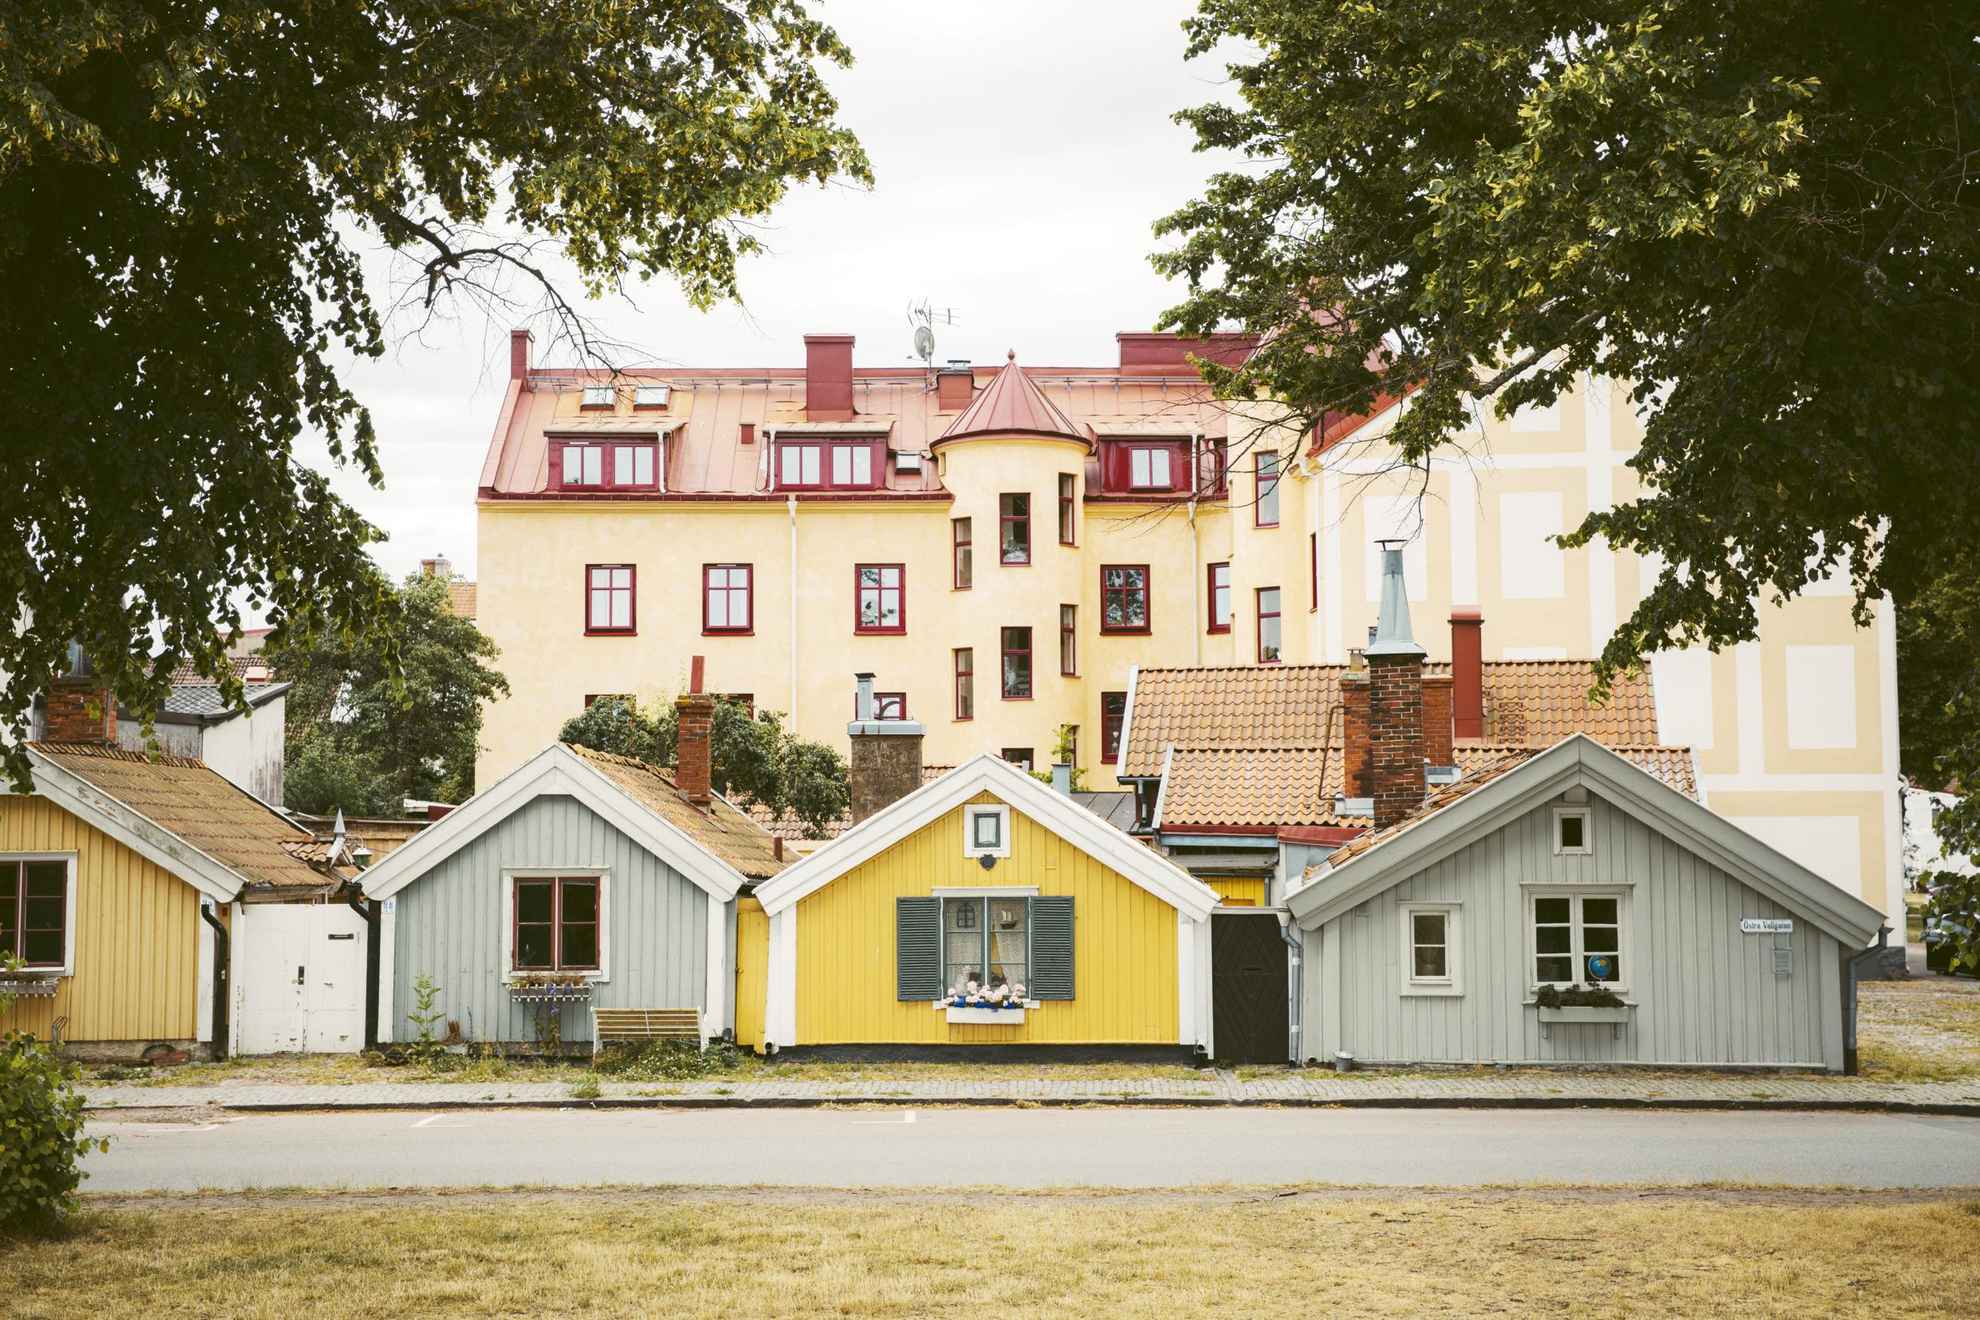 Vier kleine Holzhäuser in verschiedenen gelben und grauen Farben entlang einer Straße in der Altstadt. Dahinter ein großes hellgelbes Steinhaus.